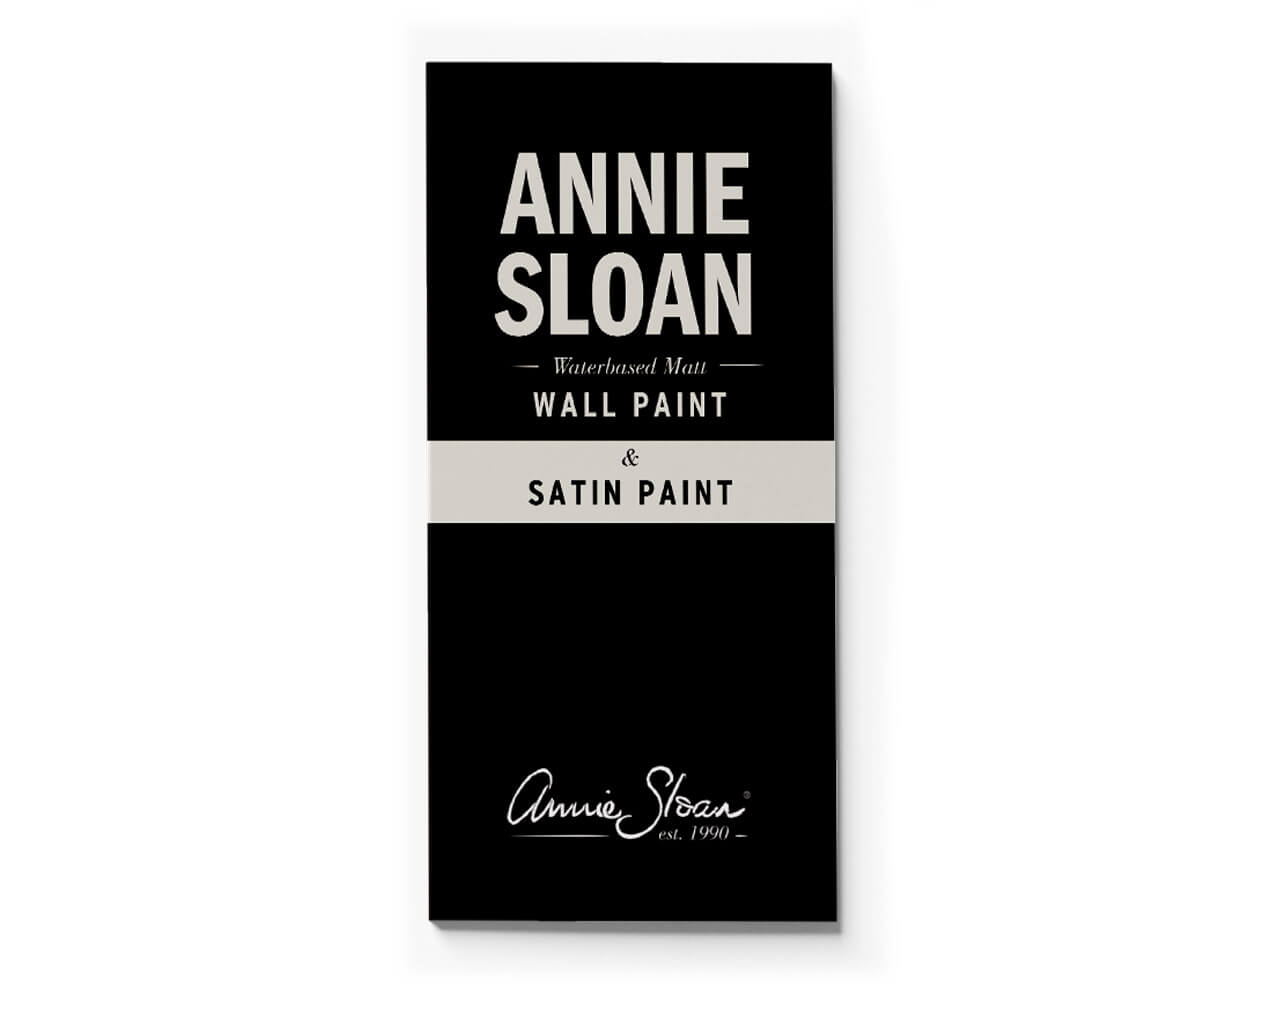 Annie Sloan Wall Paint & Satin Paint Farbkarte